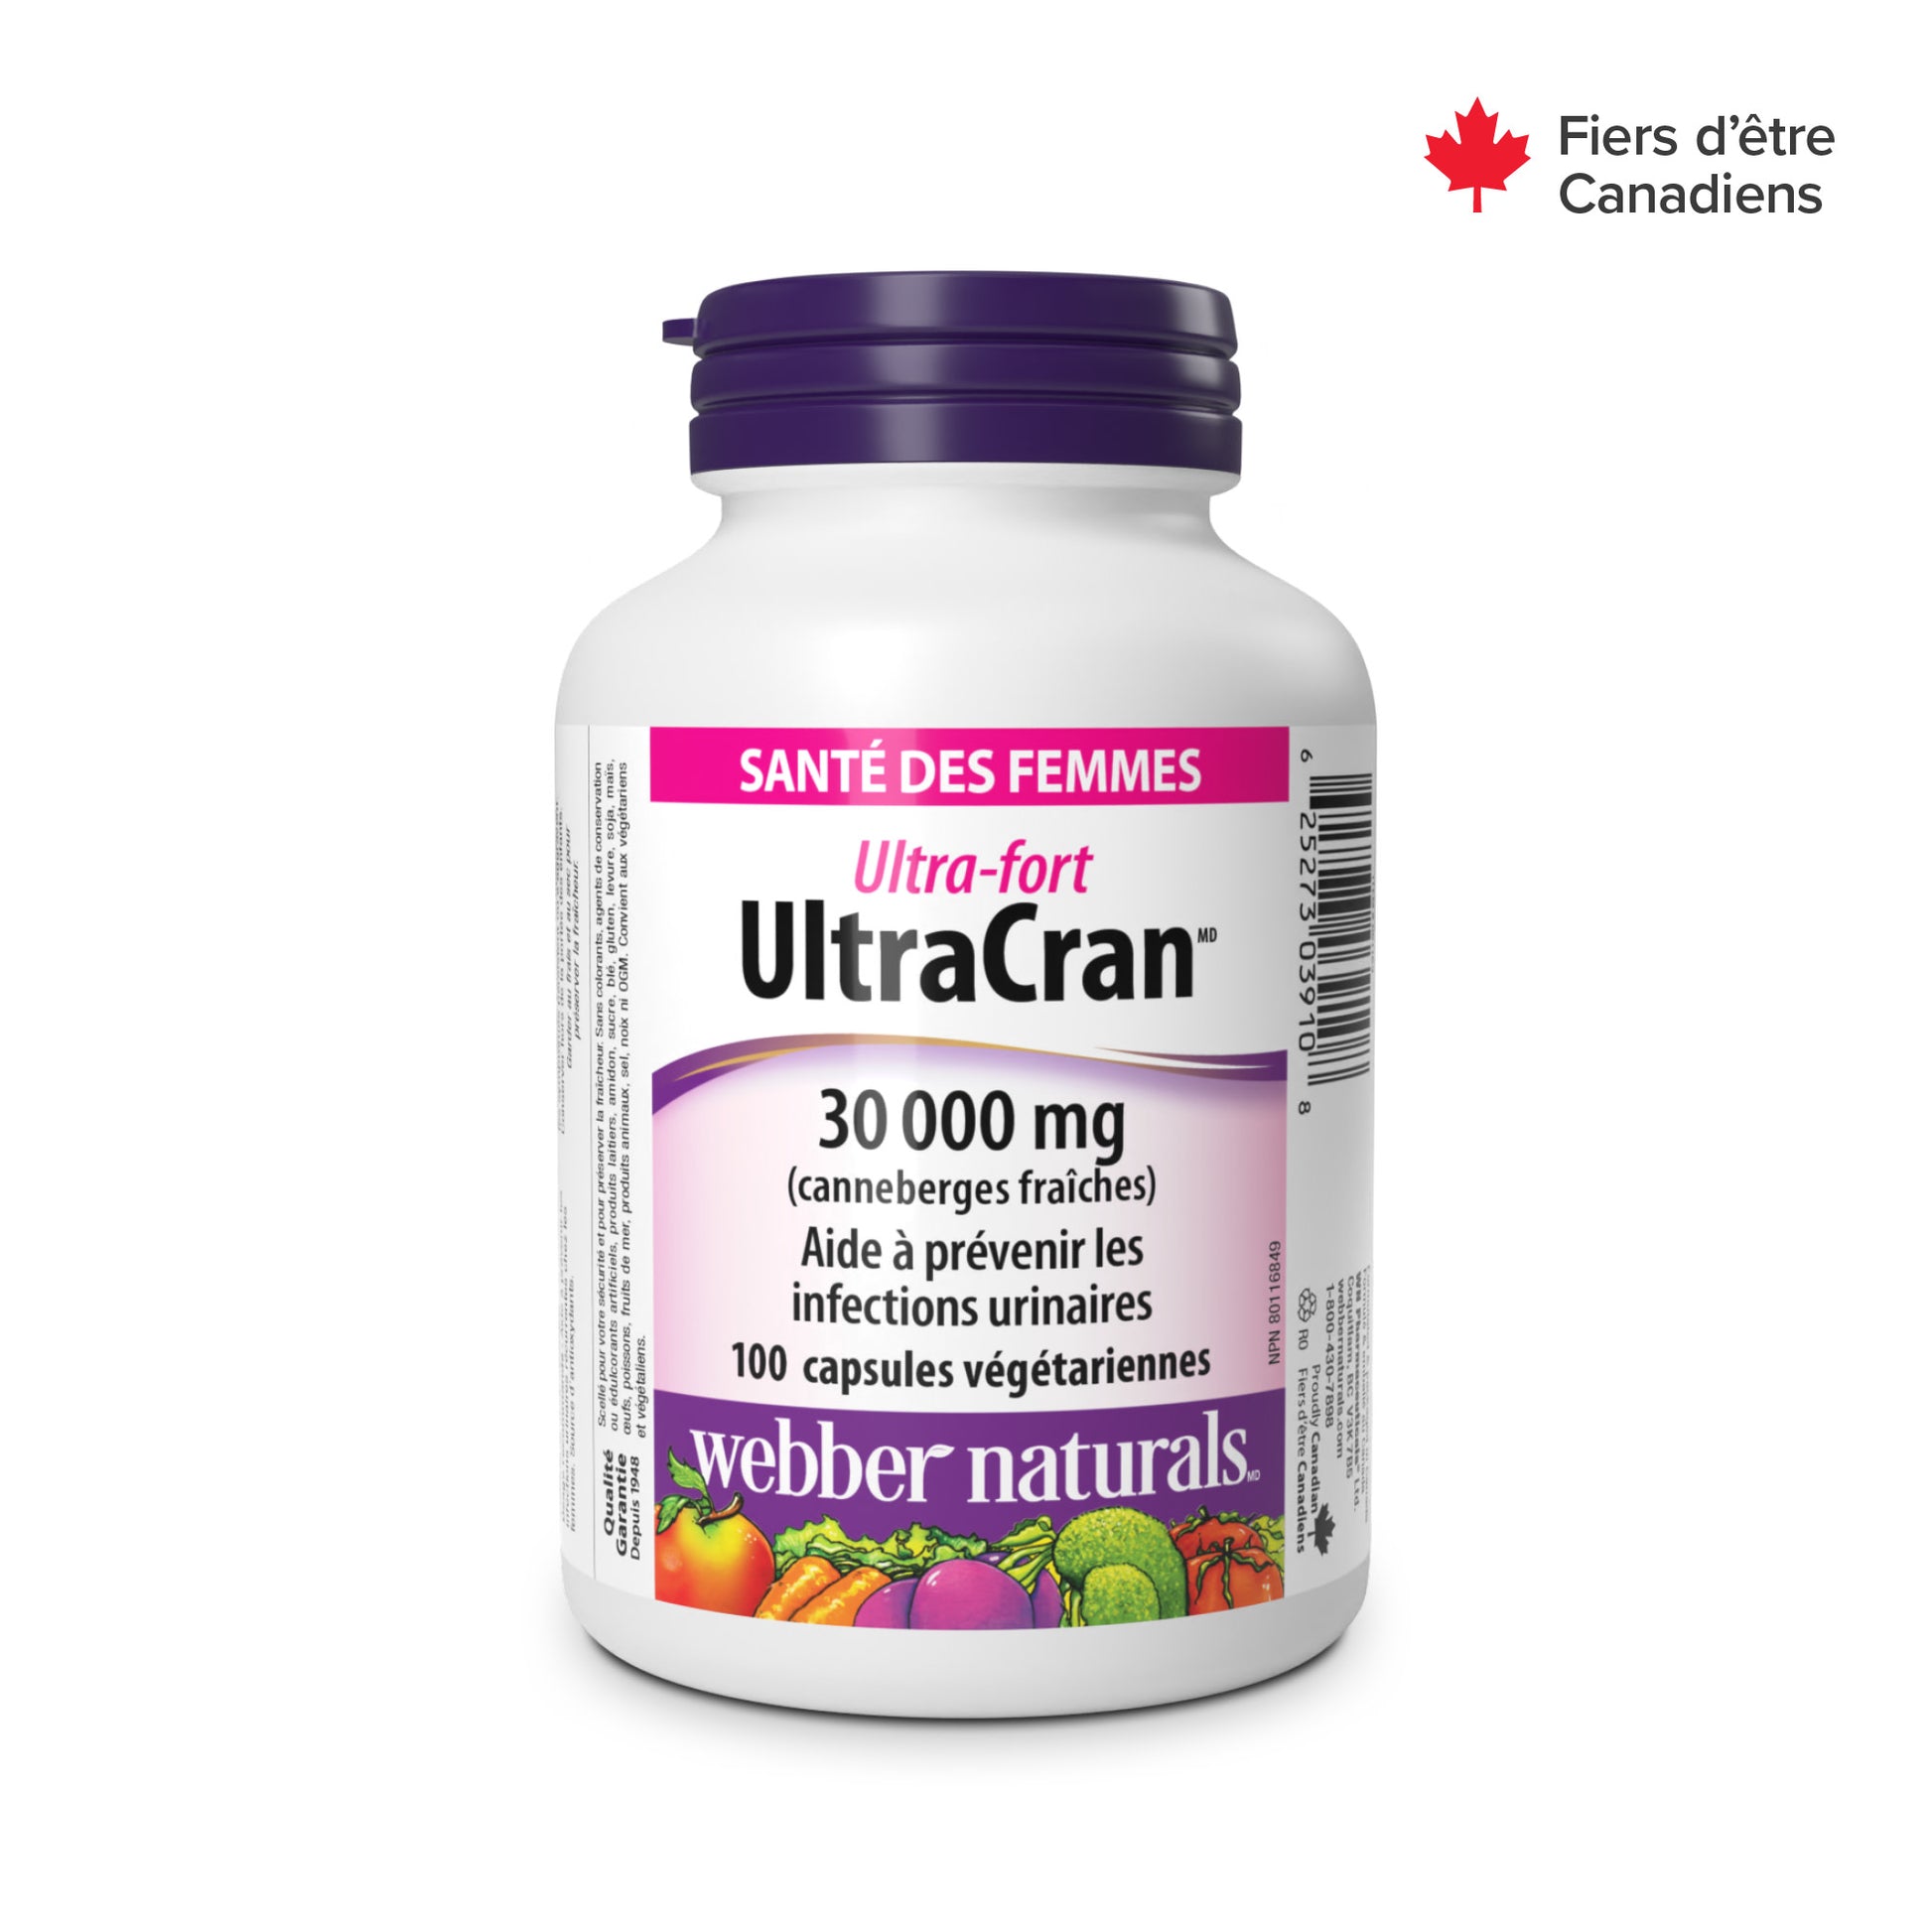 UltraCranMD 30 0000 mg ultra-fort for Webber Naturals|v|hi-res|WN3910